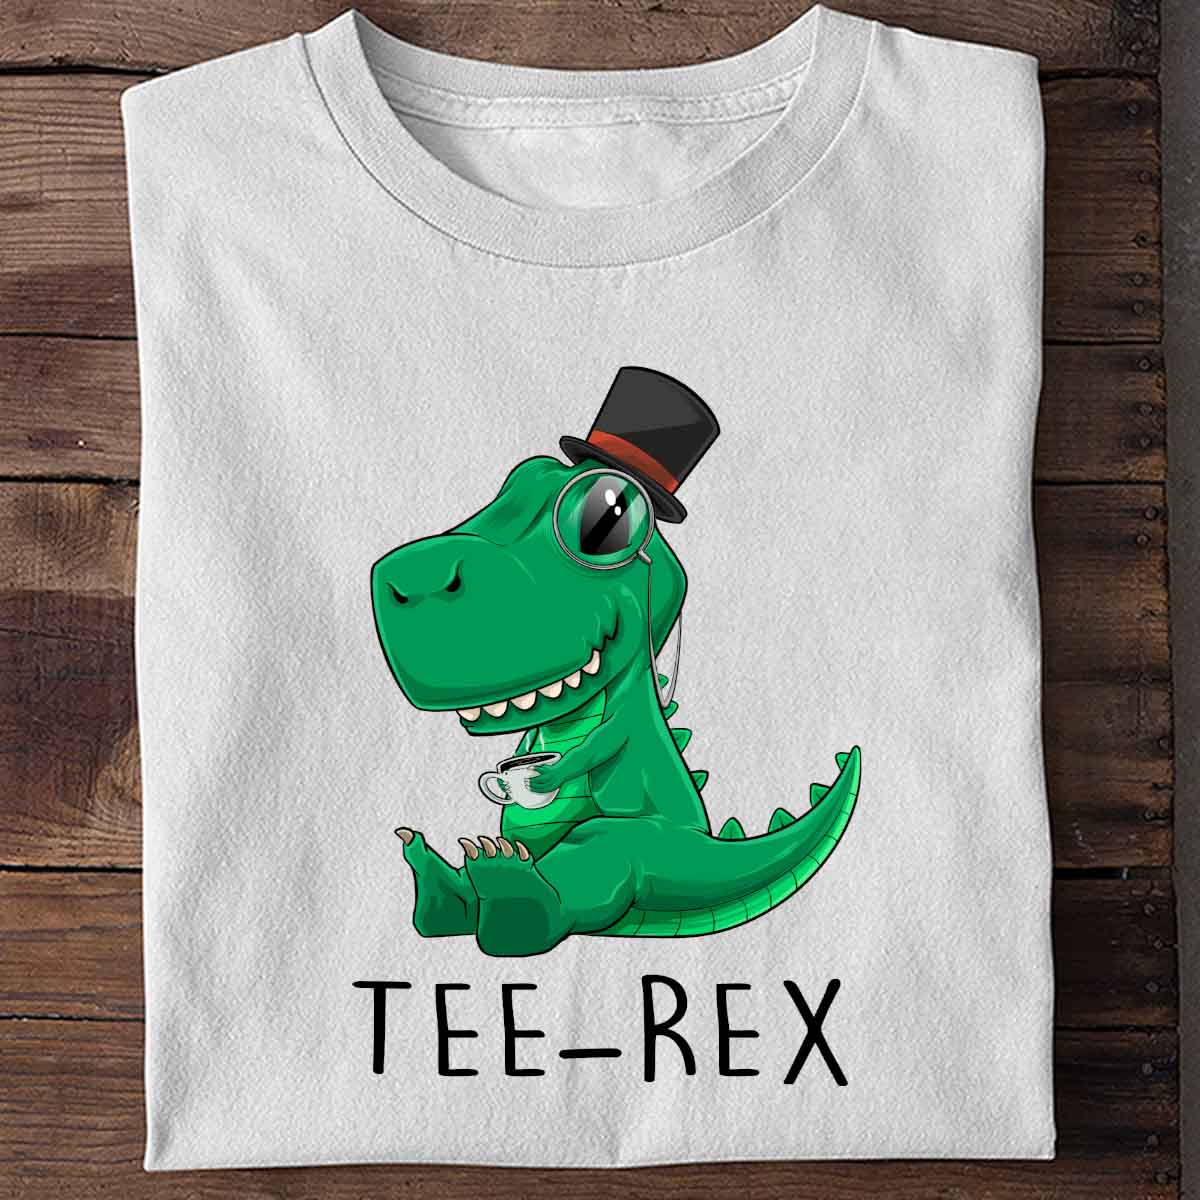 Tee-Rex - Shirt Unisex